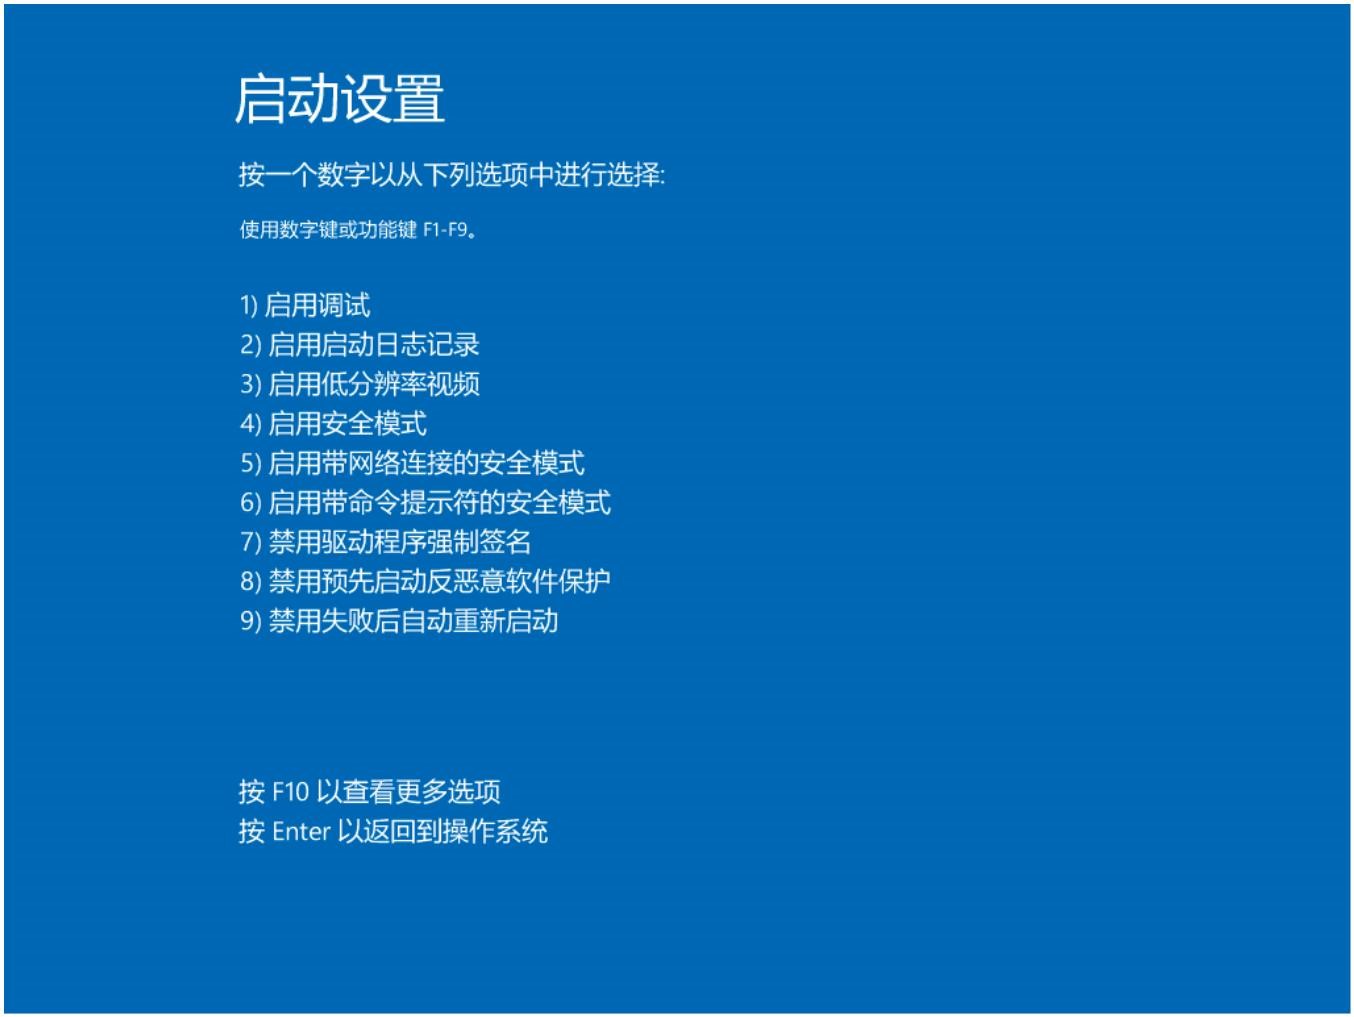 Windows10用户手册 - Windows 10 故障处理 - 蓝屏